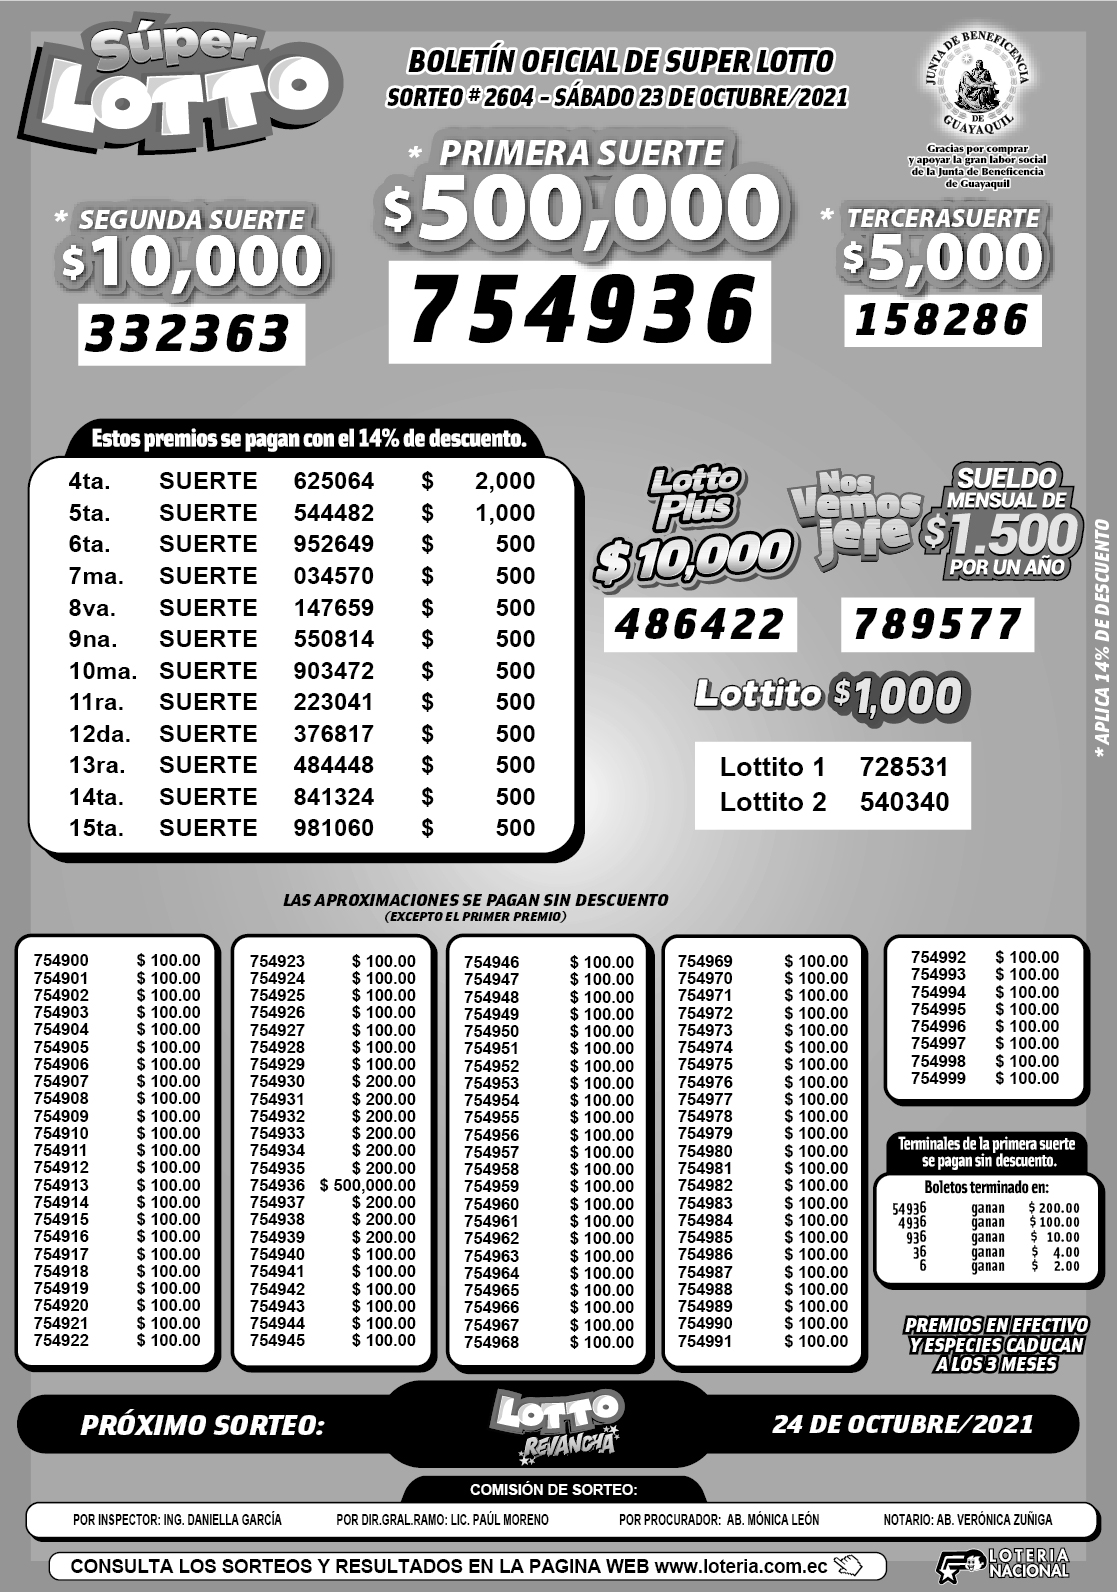 Lotto Resultados del sorteo 2604 del sábado 23 de octubre de 2021